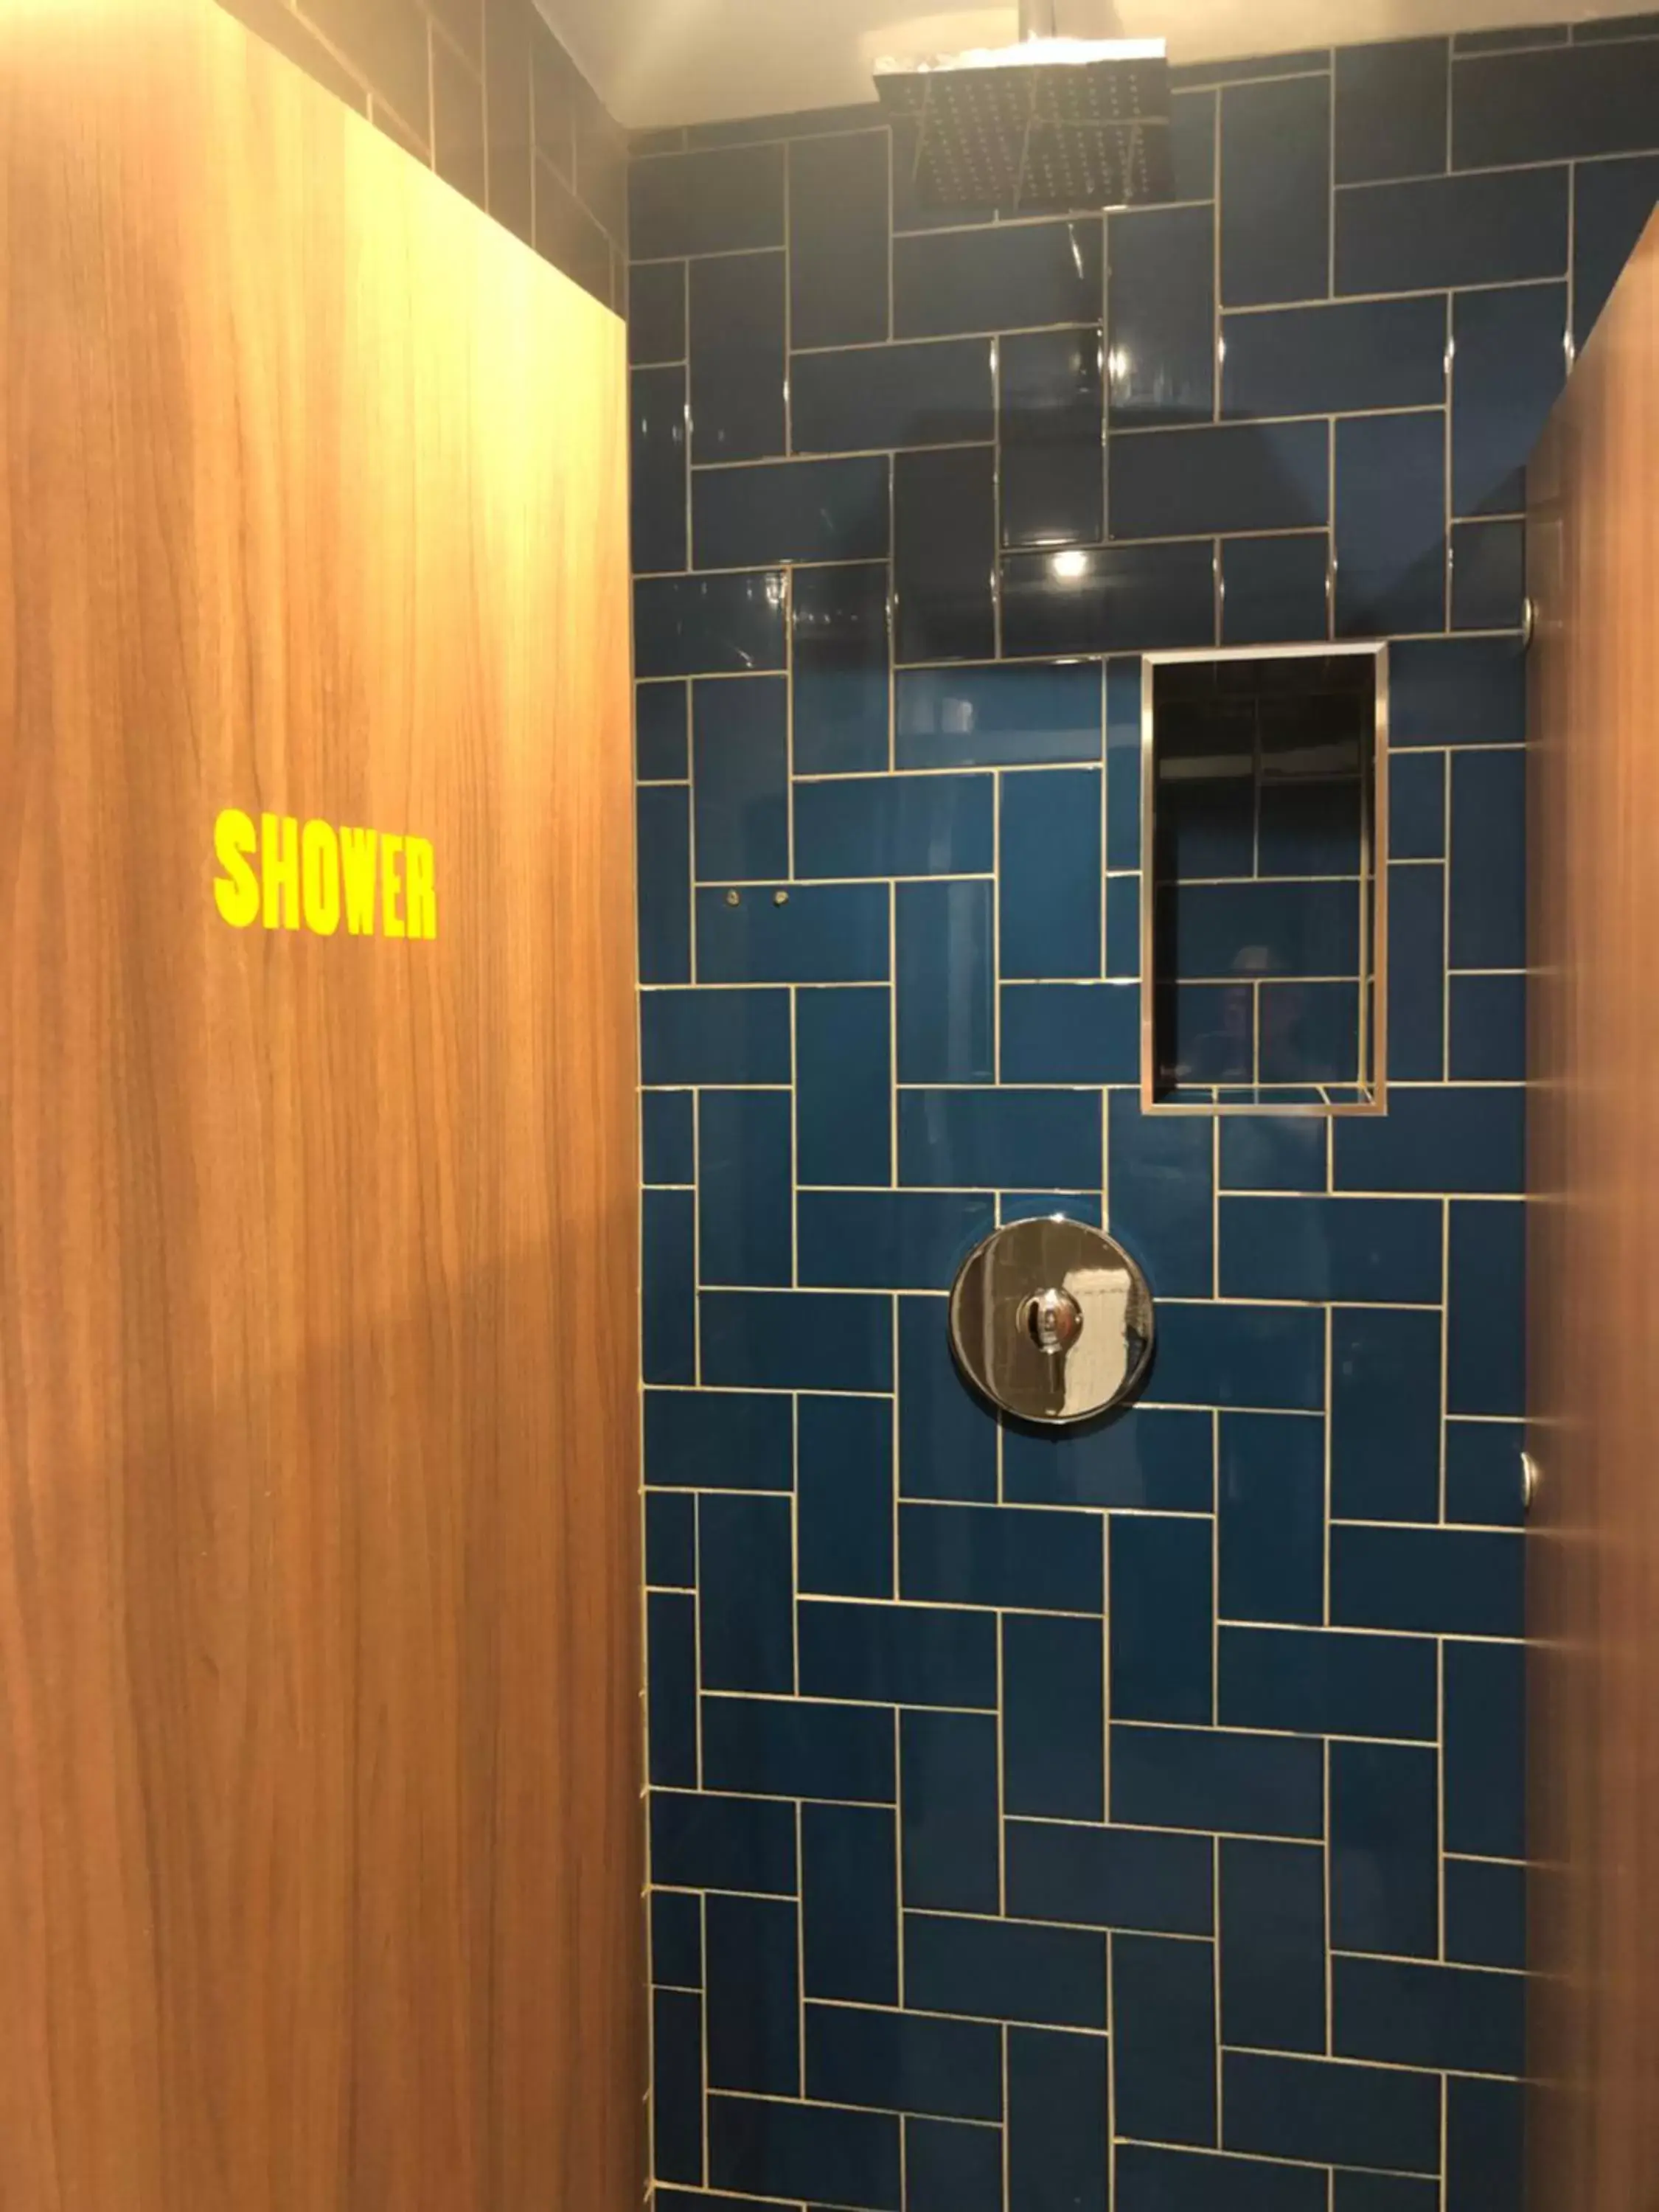 Shower, Bathroom in PubLove @ The Steam Engine,Waterloo